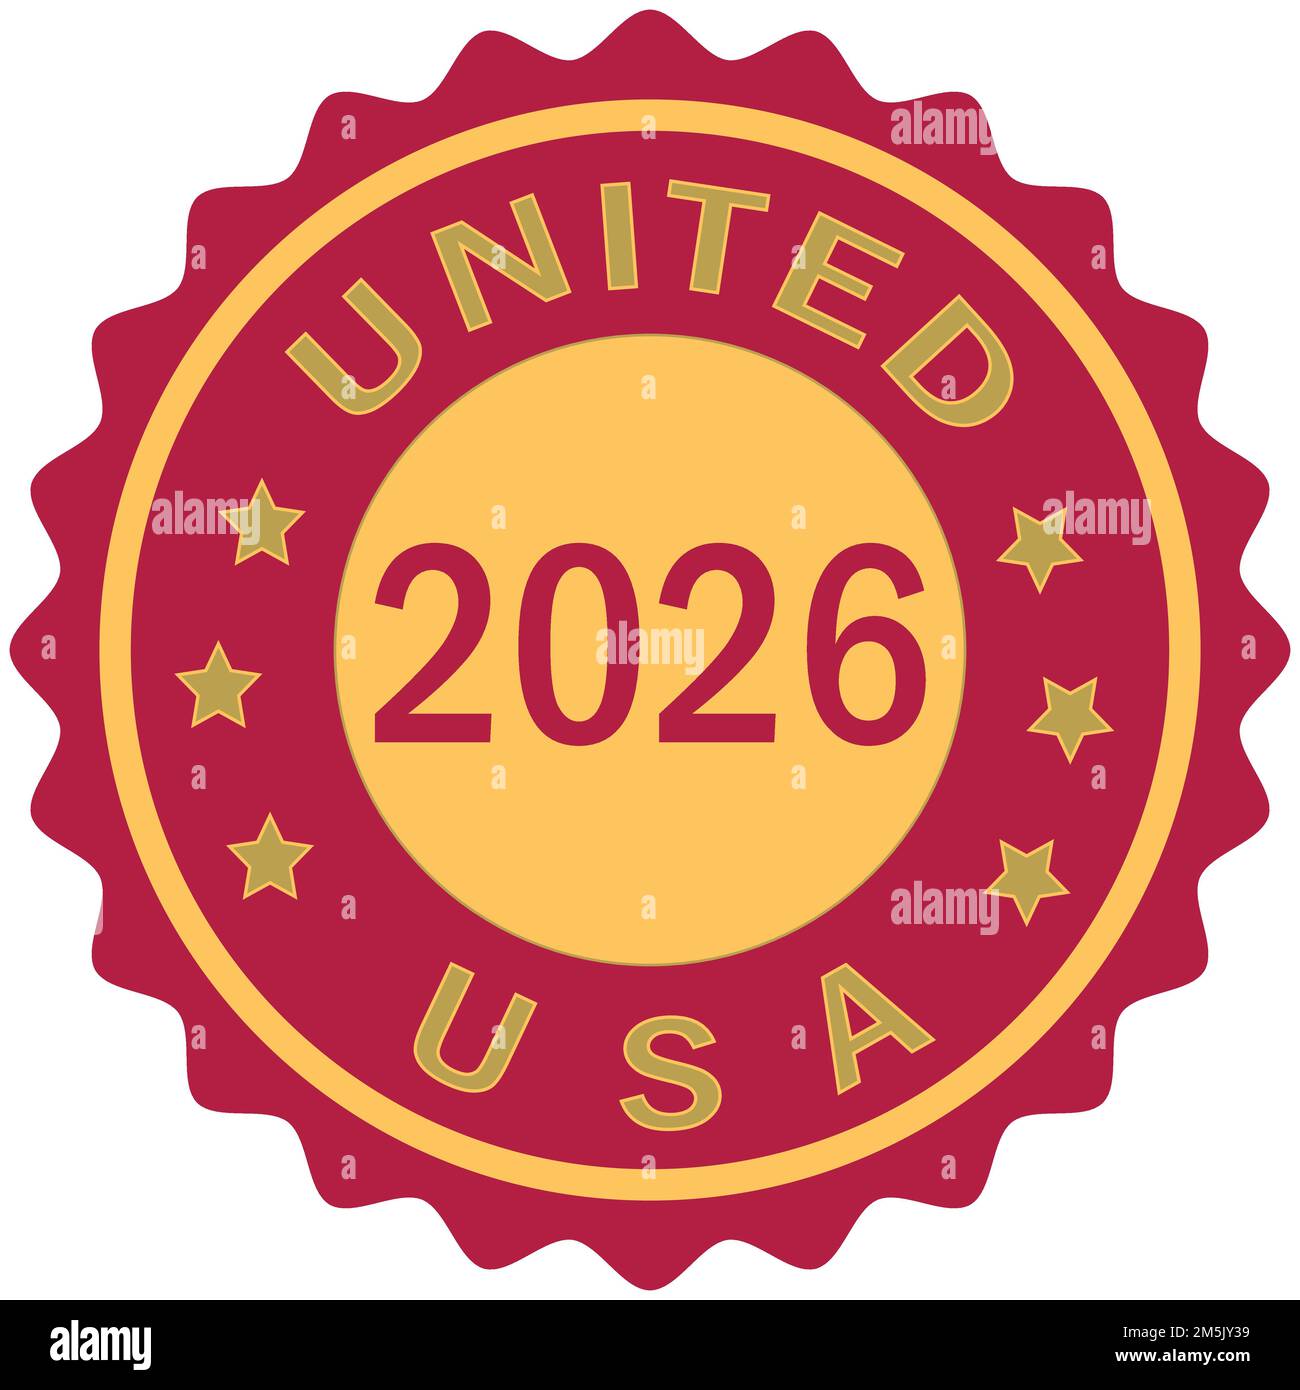 United 2026 Fußball-Meisterschaft USA farbenfrohes, abgestuftes Pinseldesign Vektor-Illustration USA-Flagge Rote Farben Hintergrund Stempel FIFA Fußball-Weltmeisterschaft USA Gold se Stock Vektor